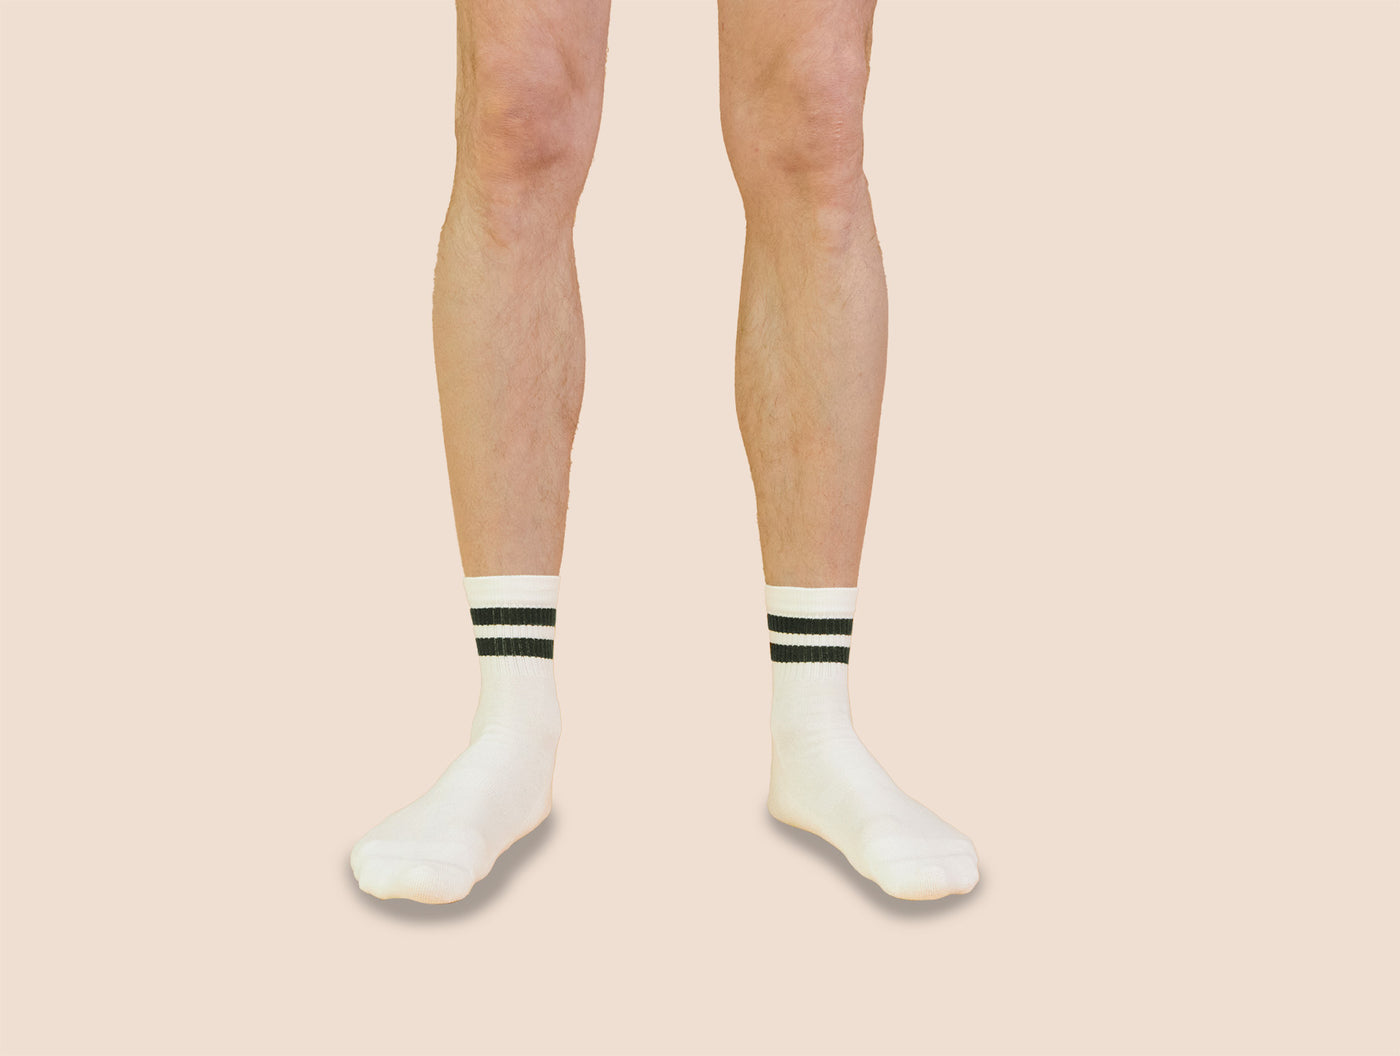 Petrone-chaussettes-tennis-coton-bio-rayures-basses-homme-écru-vert kaki-portées#Couleur_écru-vert kaki